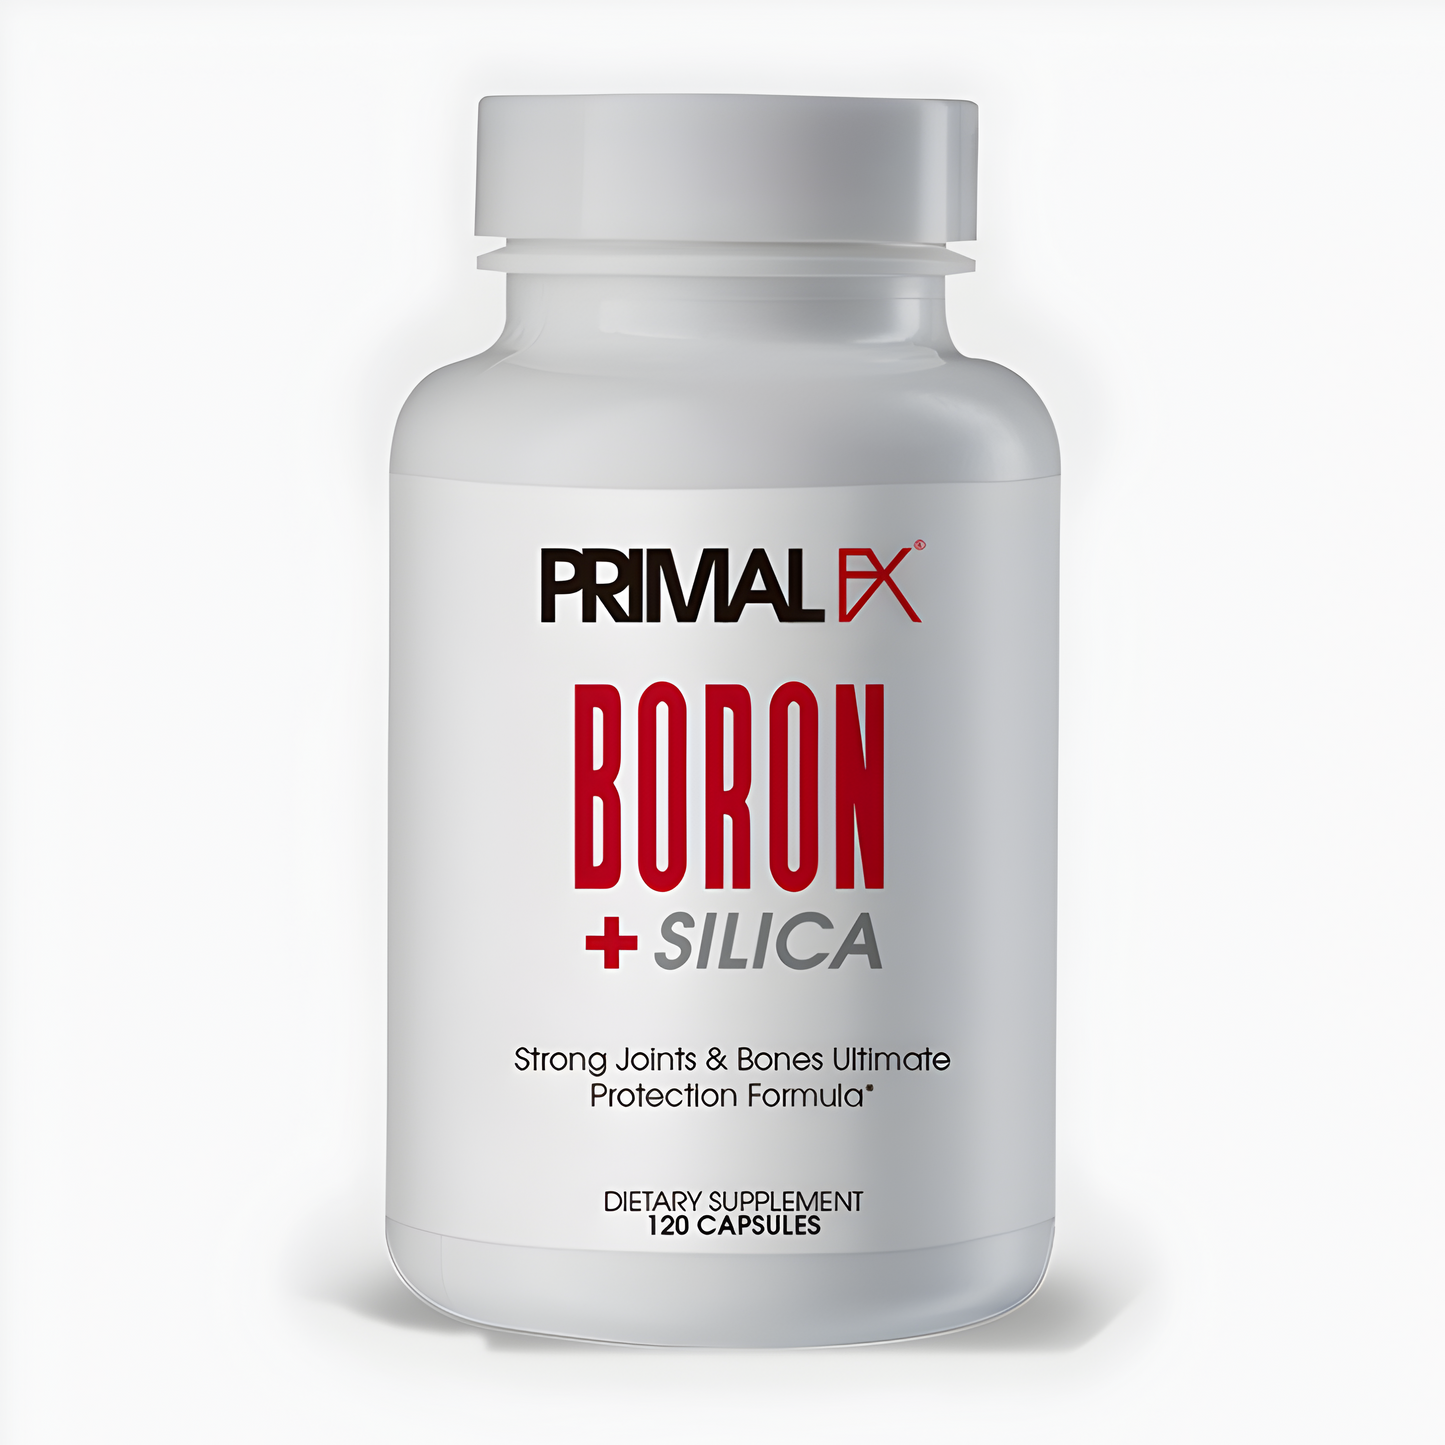 BORON + SILICA PRIMAL FX